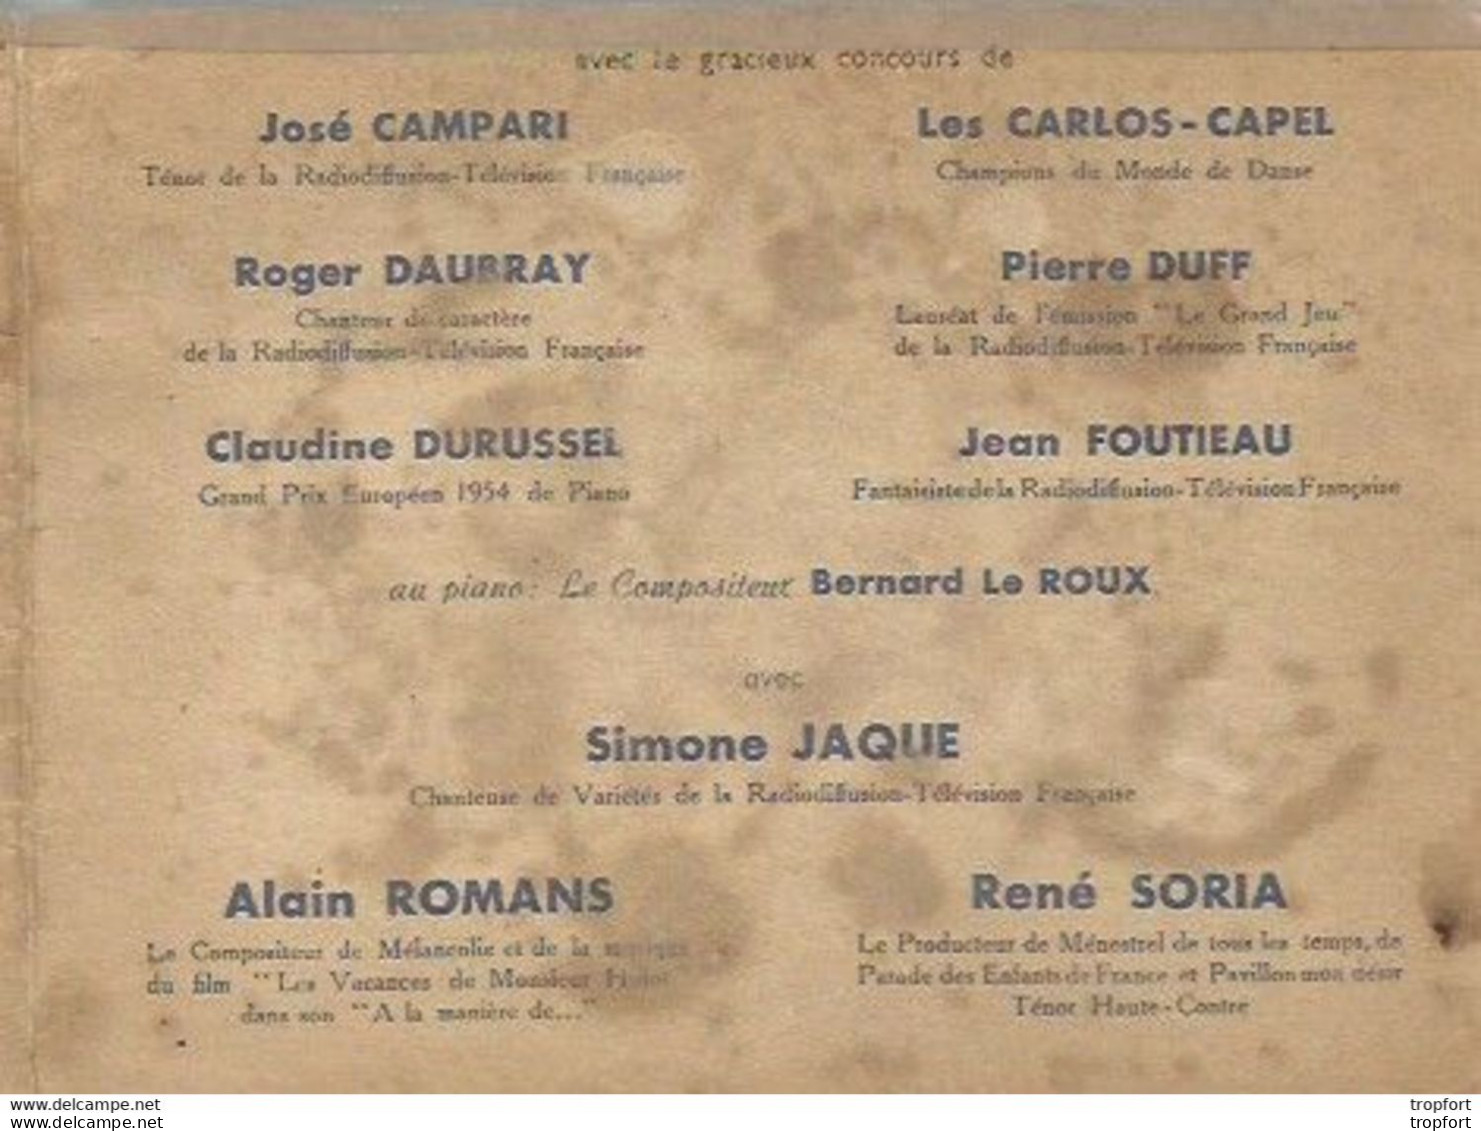 CE / Vintage / Old Program / Flandres DUNKERQUE Invitation Médaillés Militaires 1955 GALA Danse Bal ARGENTEUIL - Publicités